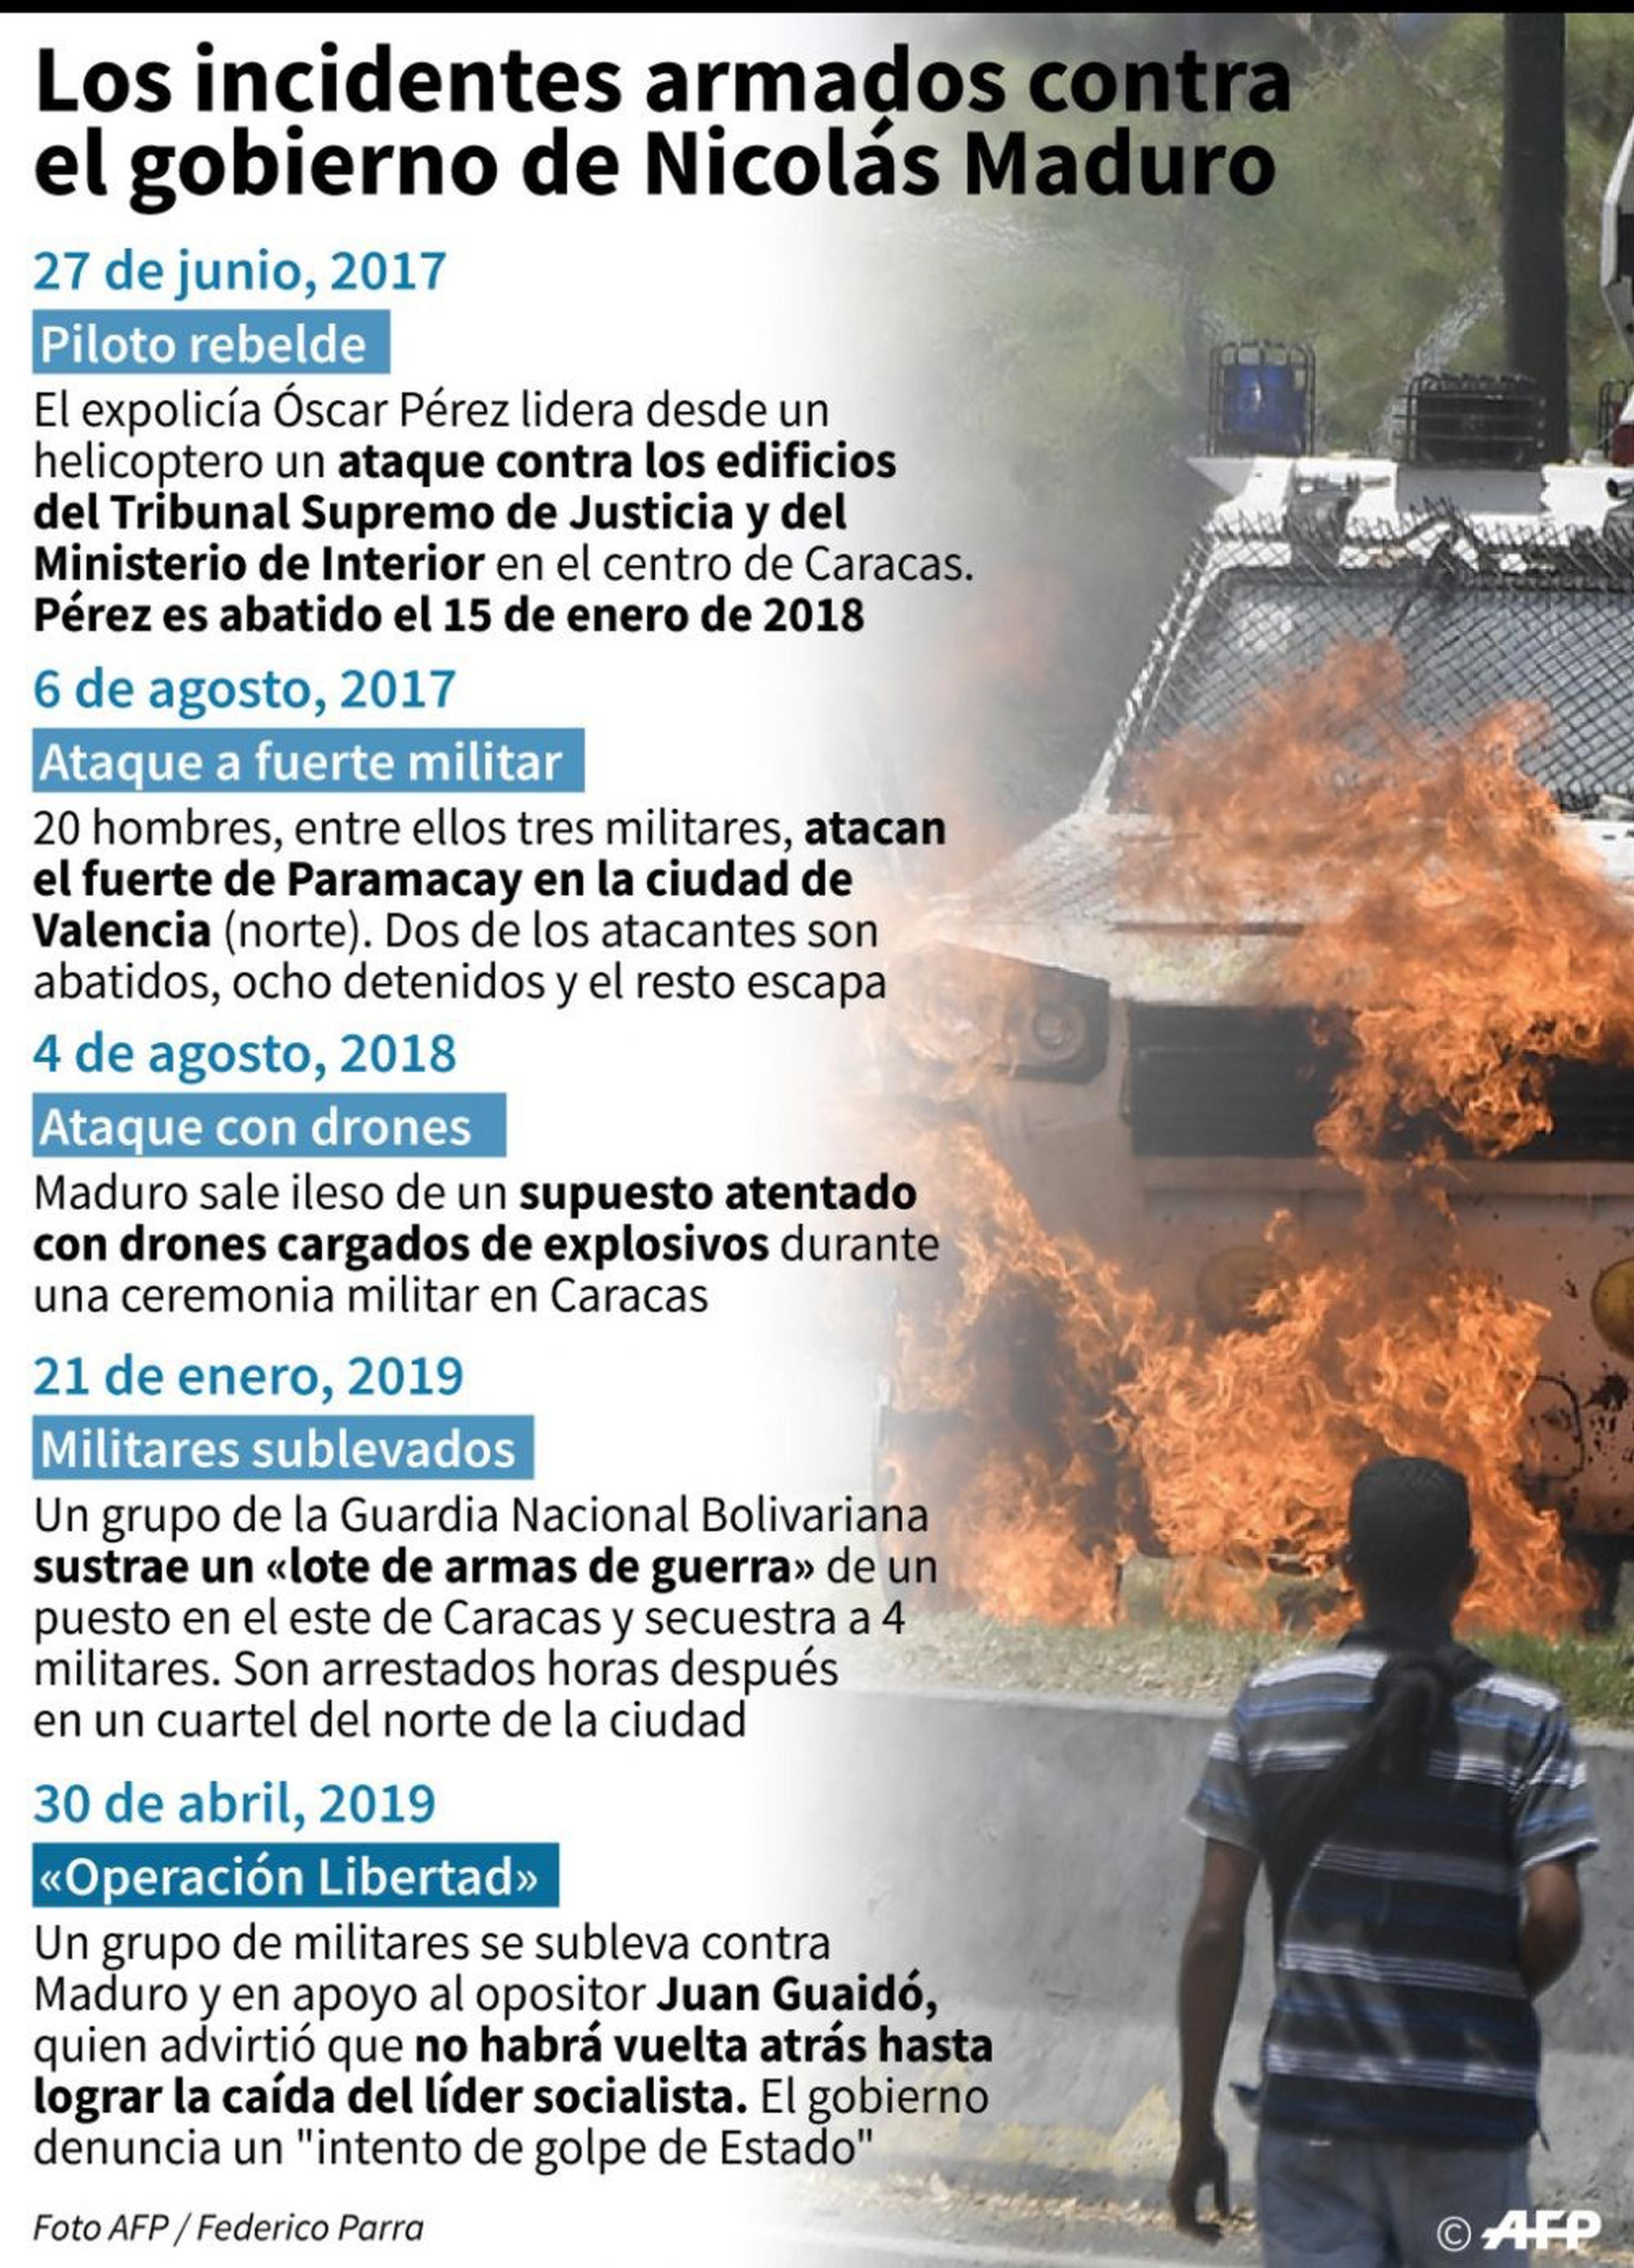 Incidentes armados contra el régimen de Nicolás Maduro. (AP)